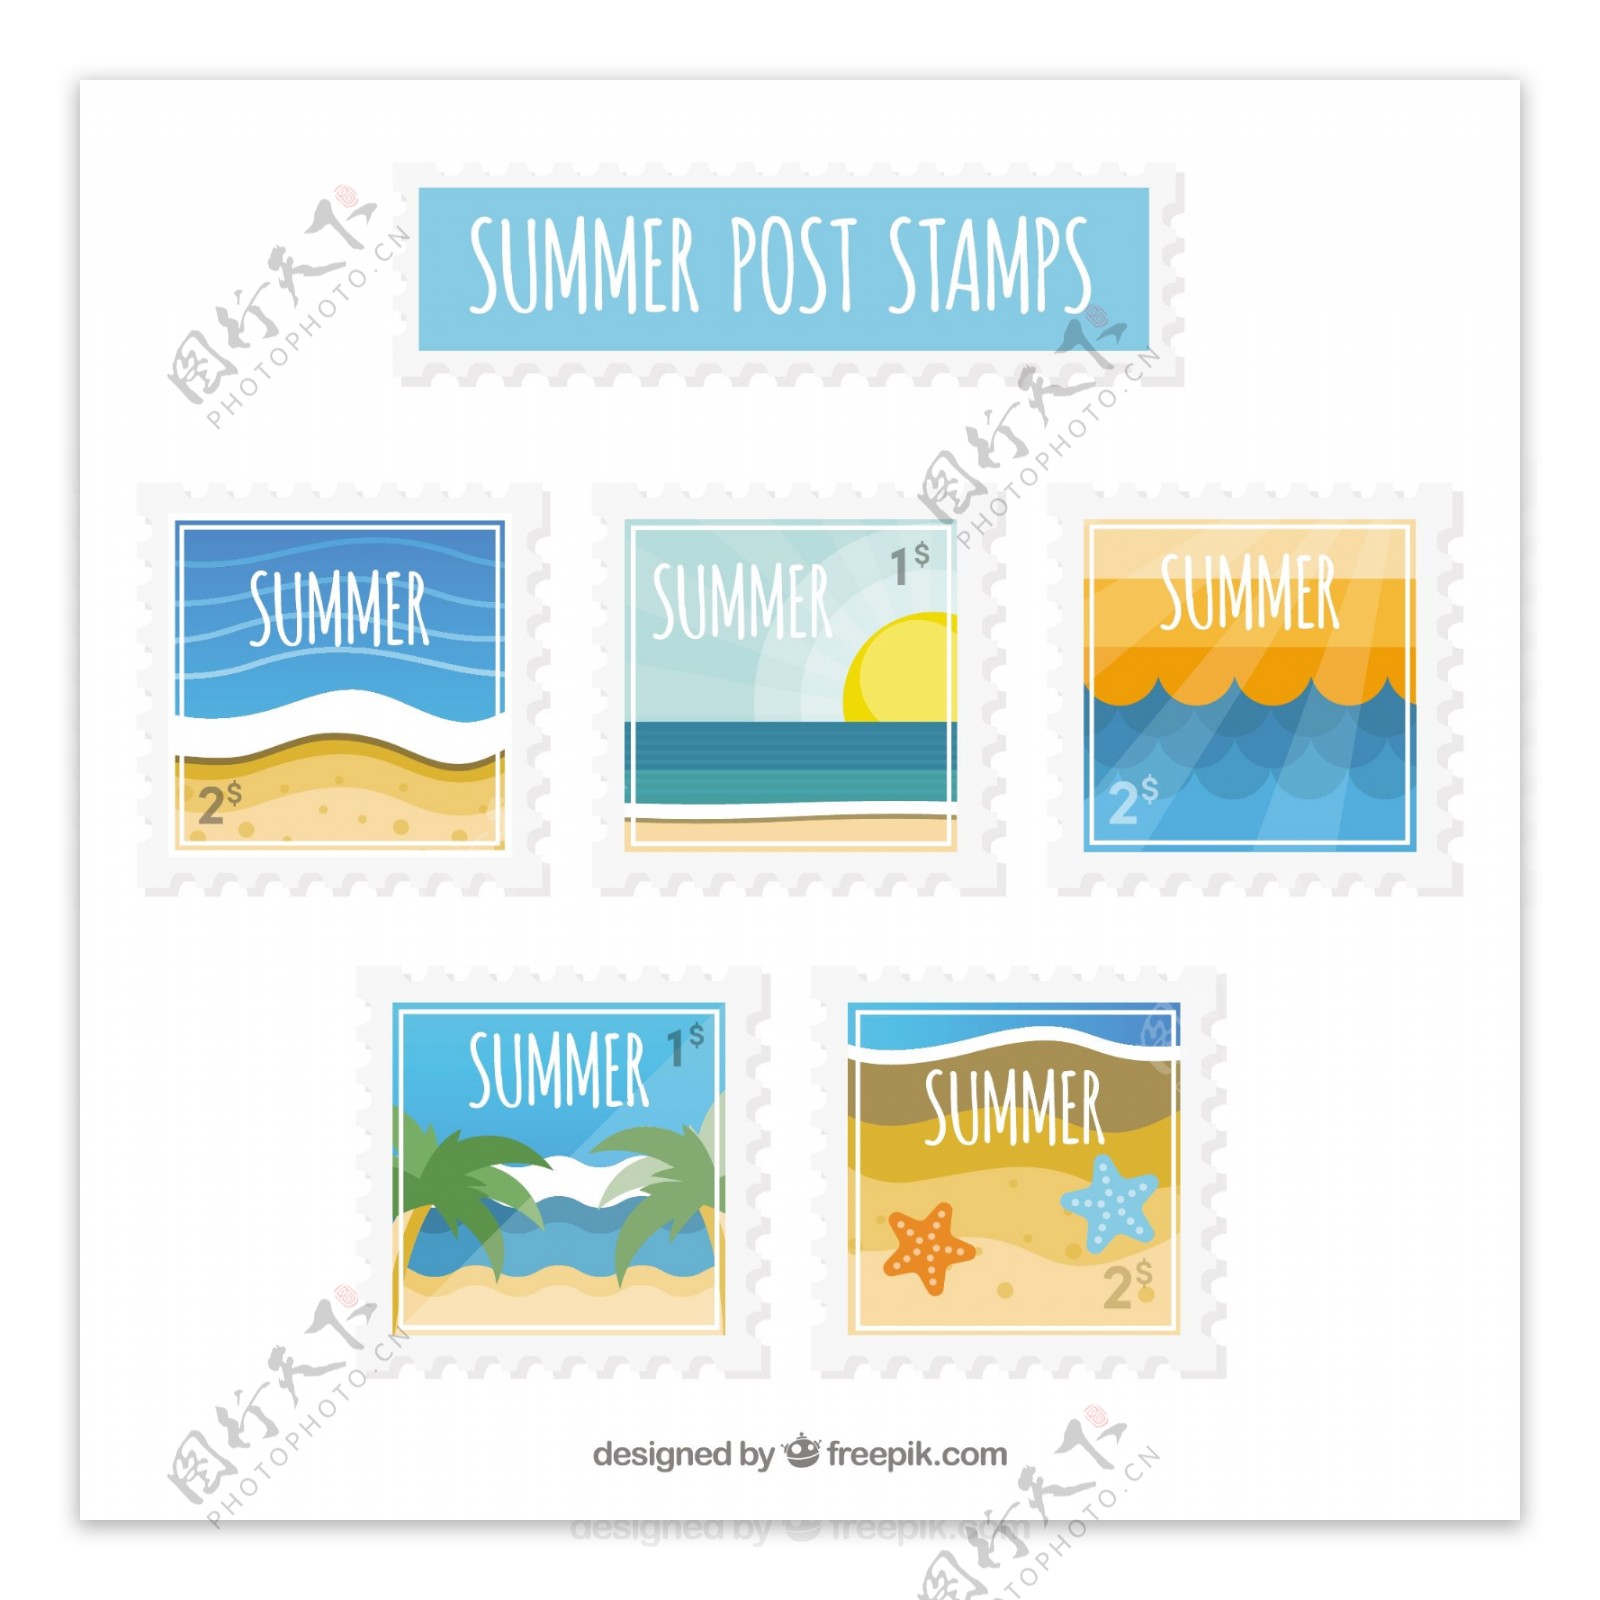 各种夏季主题邮票图标